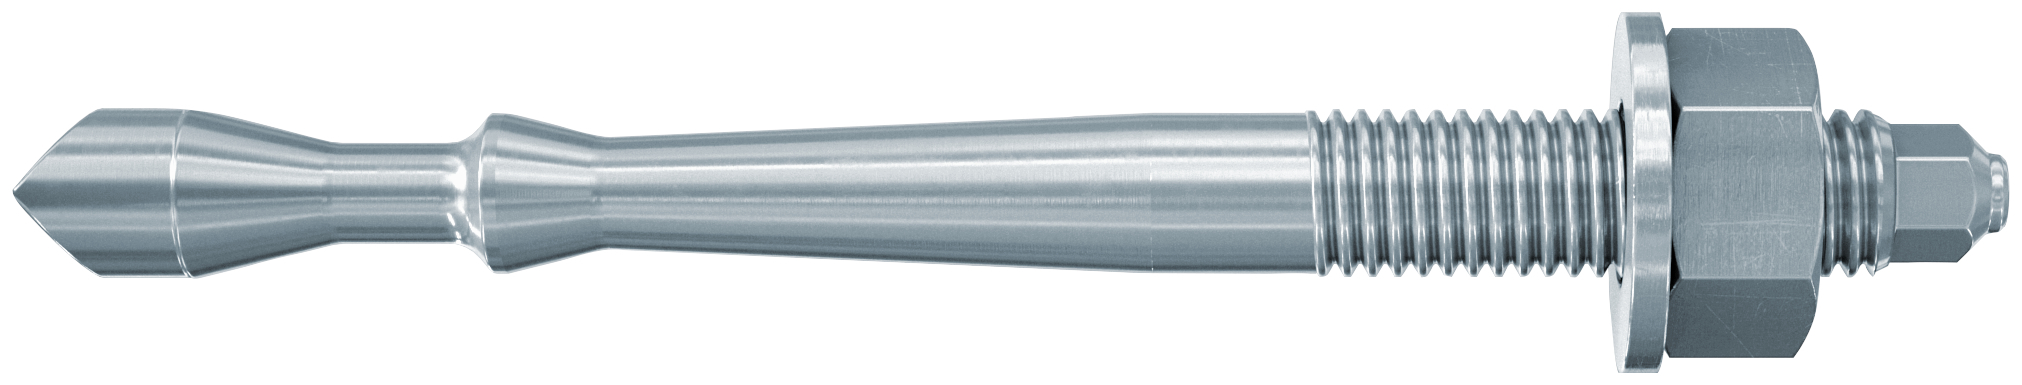 fischer Barra multicono in acciaio FHB II-A S M10x60/100 per ancorante chimico FIS HB (1 Pz.) Barra multicono corta in acciaio zincato classe 8.8. Massime prestazioni a trazione in calcestruzzo fessurato e a ridotte distanze dai bordi..